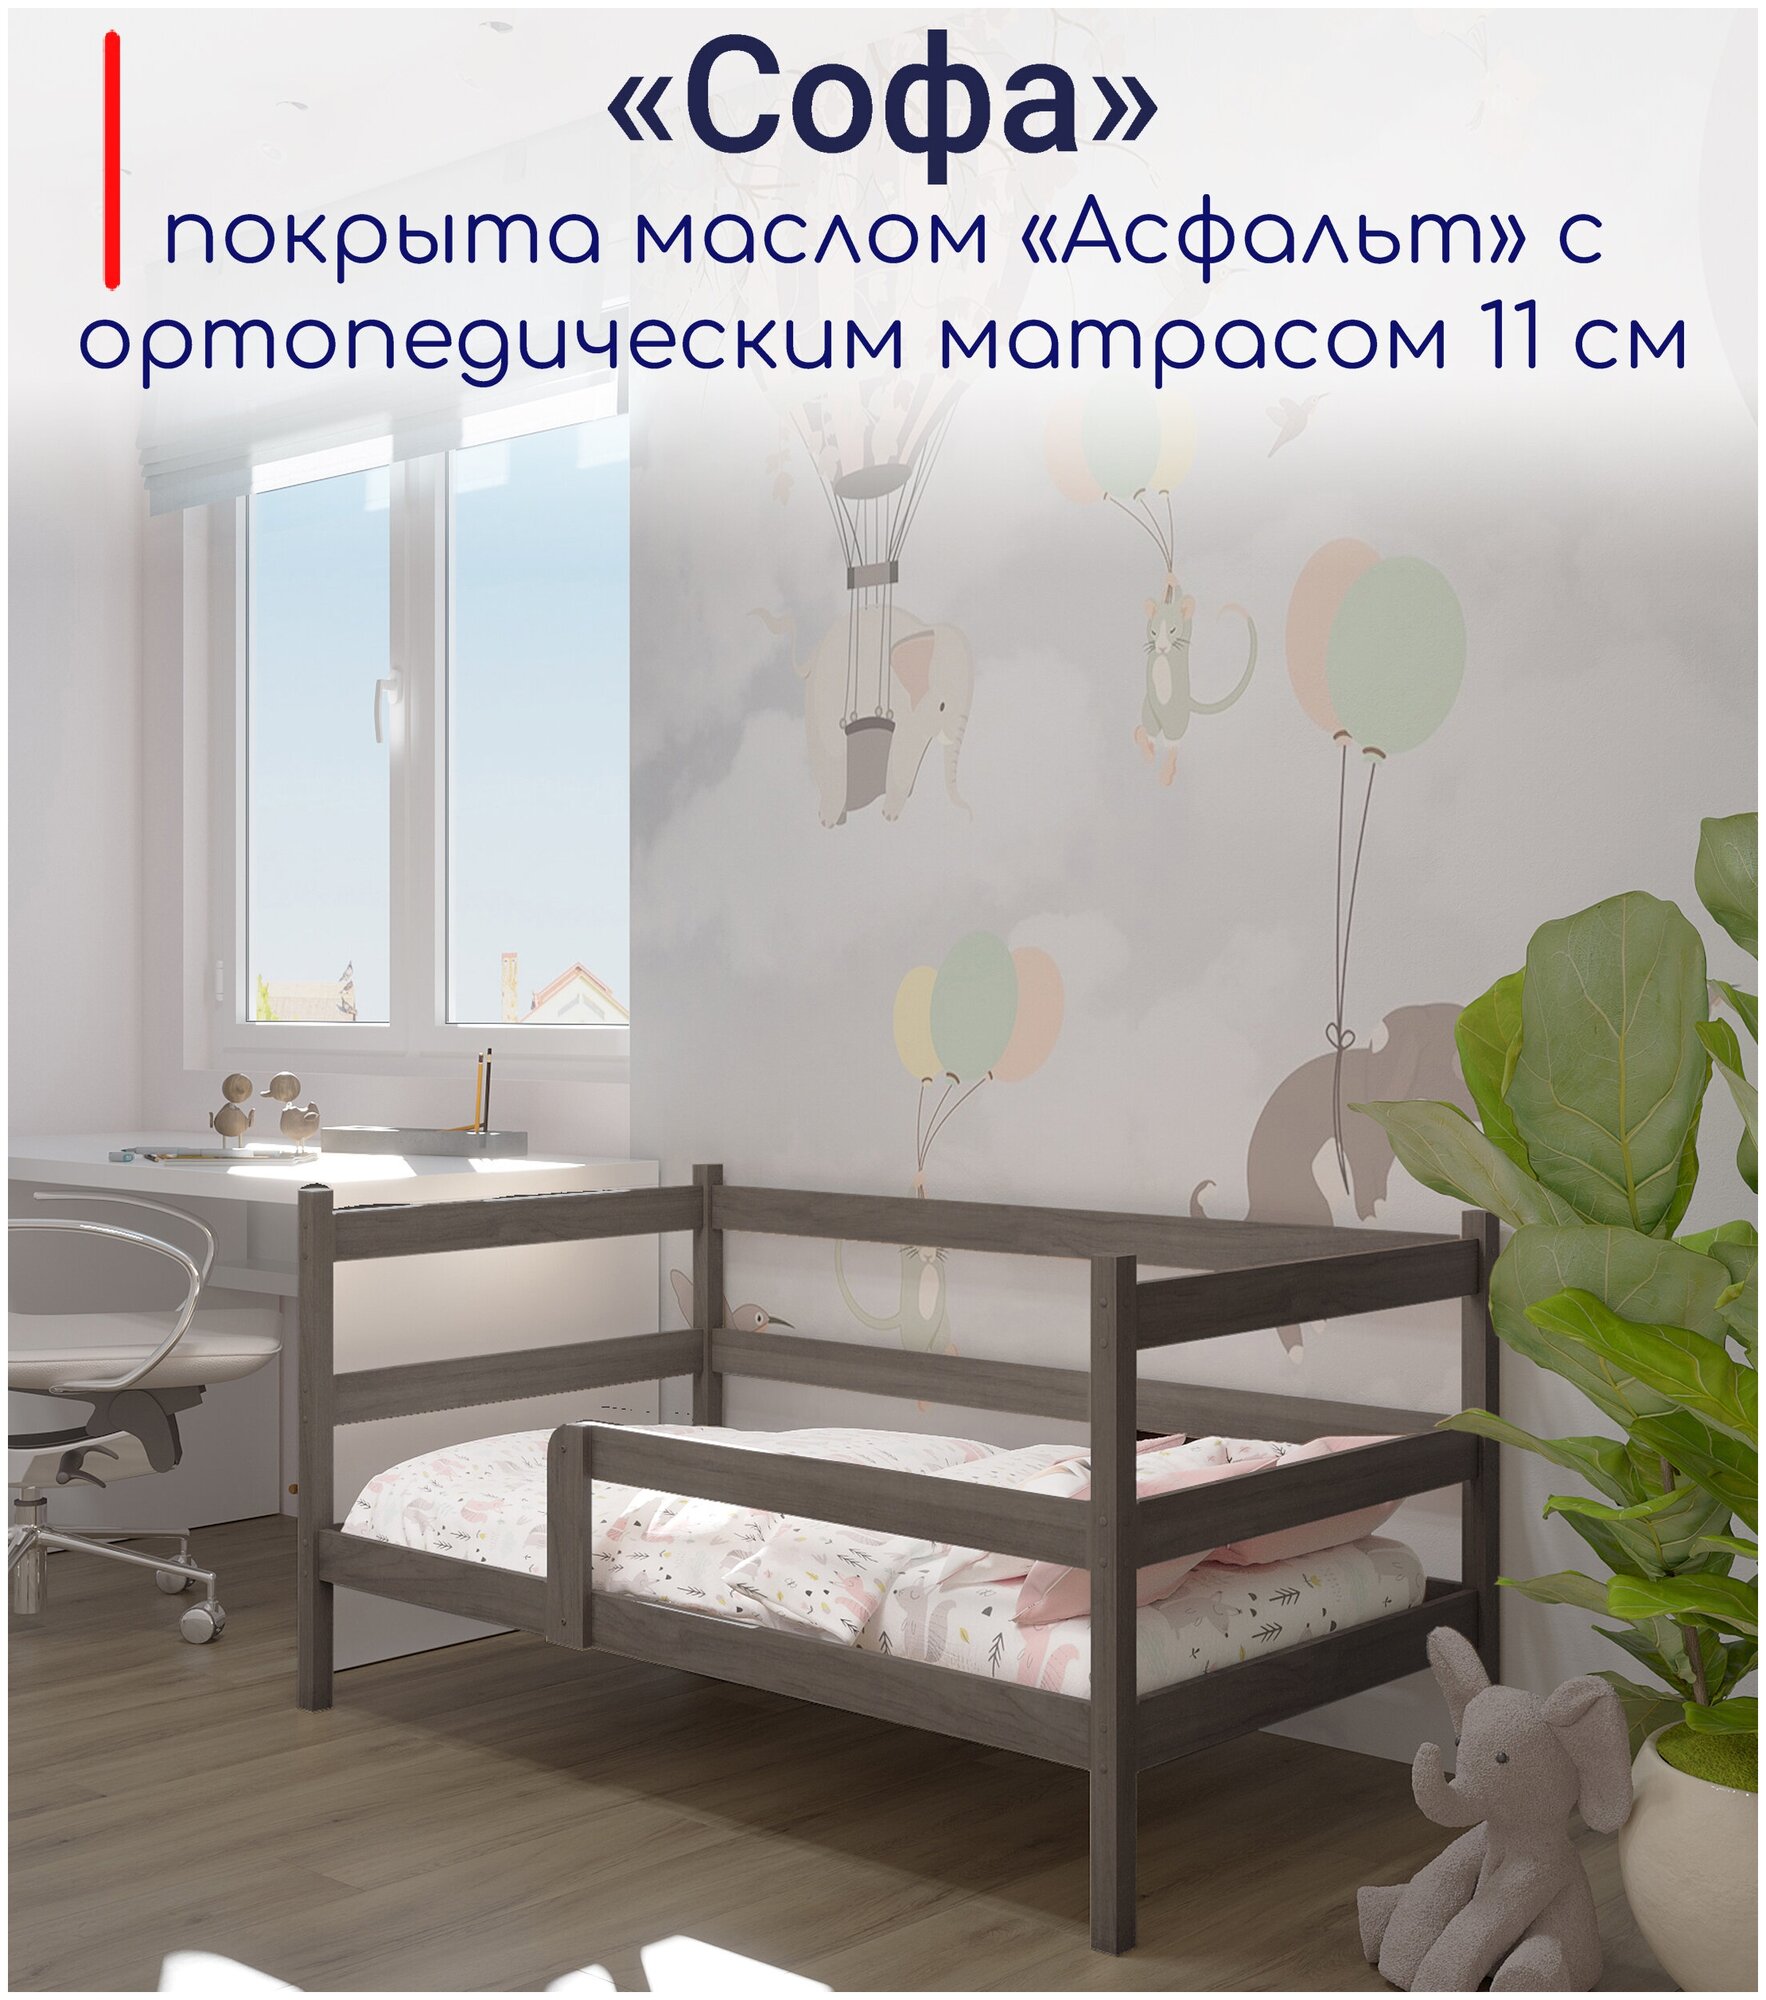 Кровать детская, подростковая "Софа", спальное место 180х90, в комплекте с ортопедическим матрасом, масло "Асфальт", из массива